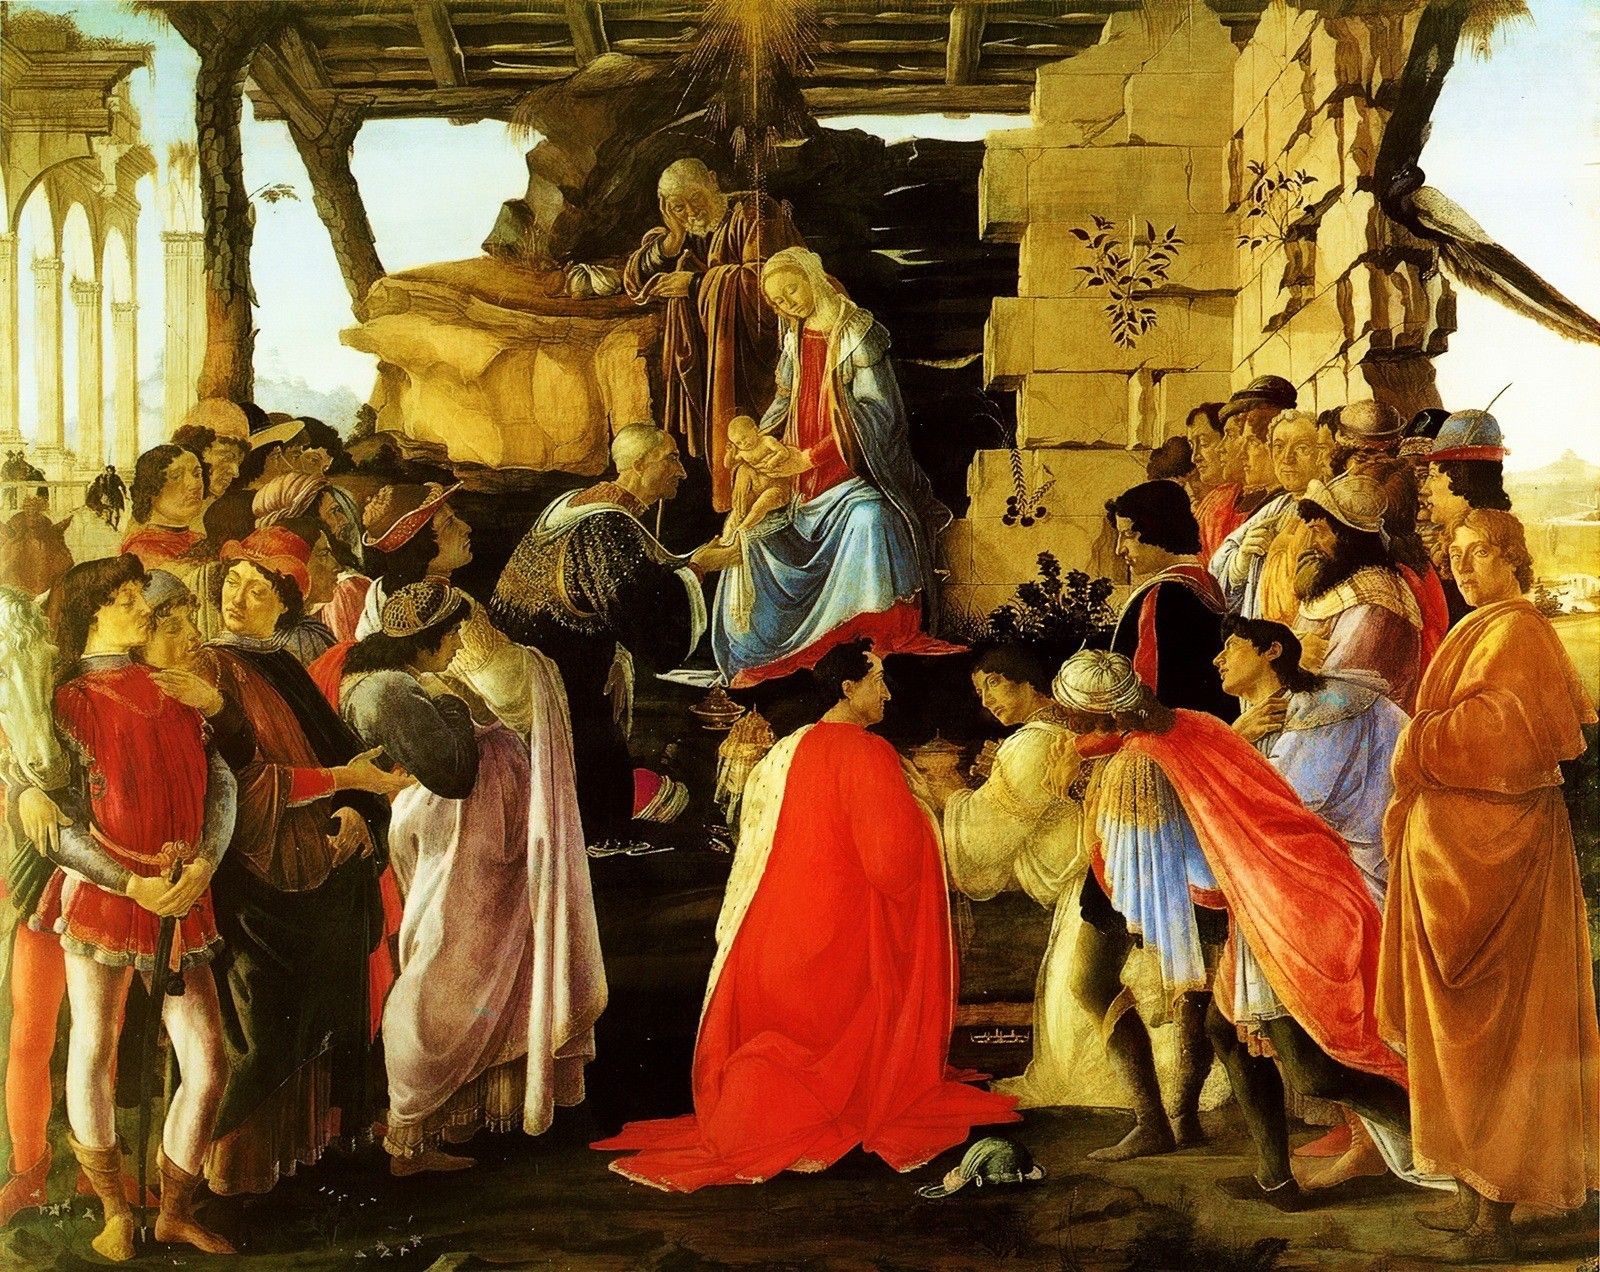 «Поклонение волхвов» — картина Сандро Боттичелли, написанная около 1475 года. Хранится в галерее Уффици. Известно, что Боттичелли было заказано не менее семи версий «Поклонения волхвов». В образе волхвов Боттичелли вывел трёх членов семейства Медичи: Козимо Старого, преклонившего колени перед Девой Марией, изображение которого Вазари охарактеризовал, как «лучшее из всех сохранившихся, полное жизненной силы», и его сыновей — Пьеро ди Козимо и Джованни ди Козимо рядом с ним. Все трое ко времени написания картины были уже мертвы, а Флоренцией успешно управлял внук Козимо — Лоренцо Медичи, также изображённый на картине вместе со своим братом Джулиано. Картина написана по заказу состоятельного флорентийца Гаспаре ди Дзанобе дель Ламы, члена гильдии искусств и ремёсел города Флоренции и придворного Медичи, для его погребальной часовни в базилике Санта-Мария-Новелла. Автопортрет самого Боттичелли выполнен в образе белокурого юноши в жёлтой мантии у правого края картины…